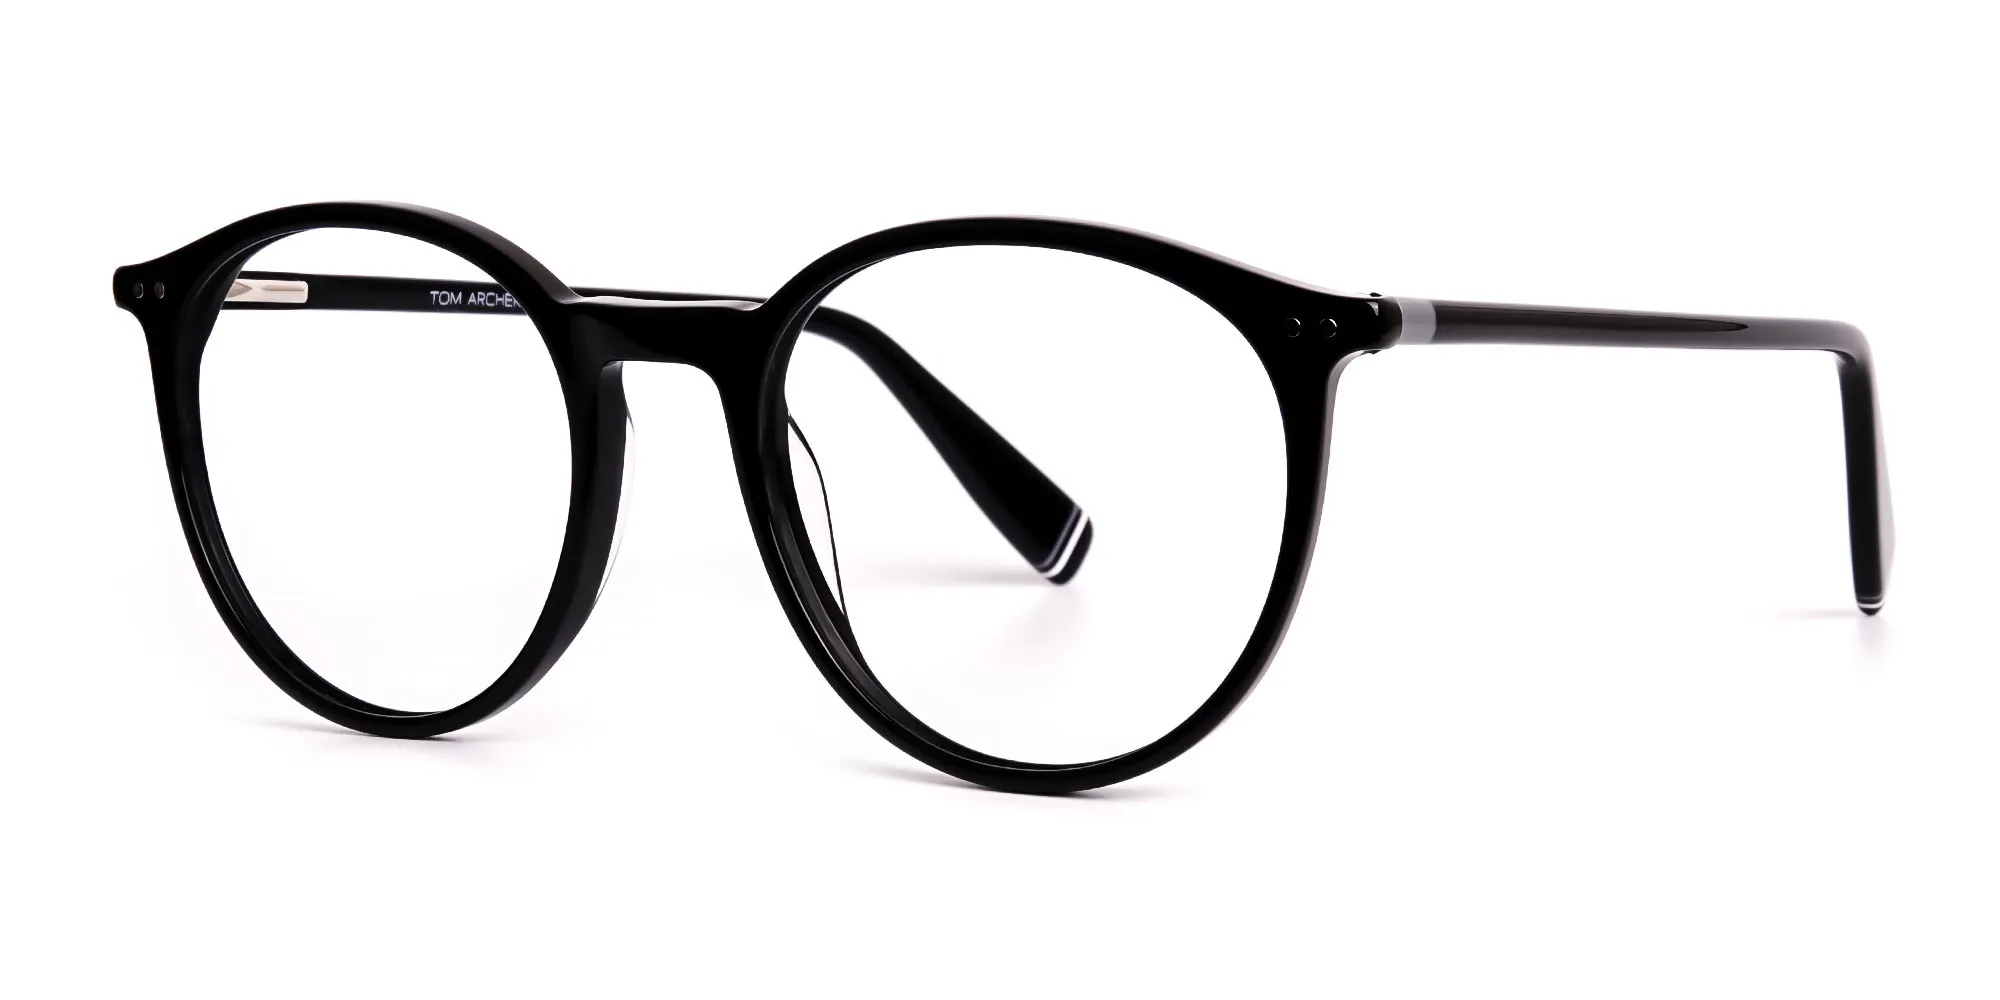 shiny black round glasses frames